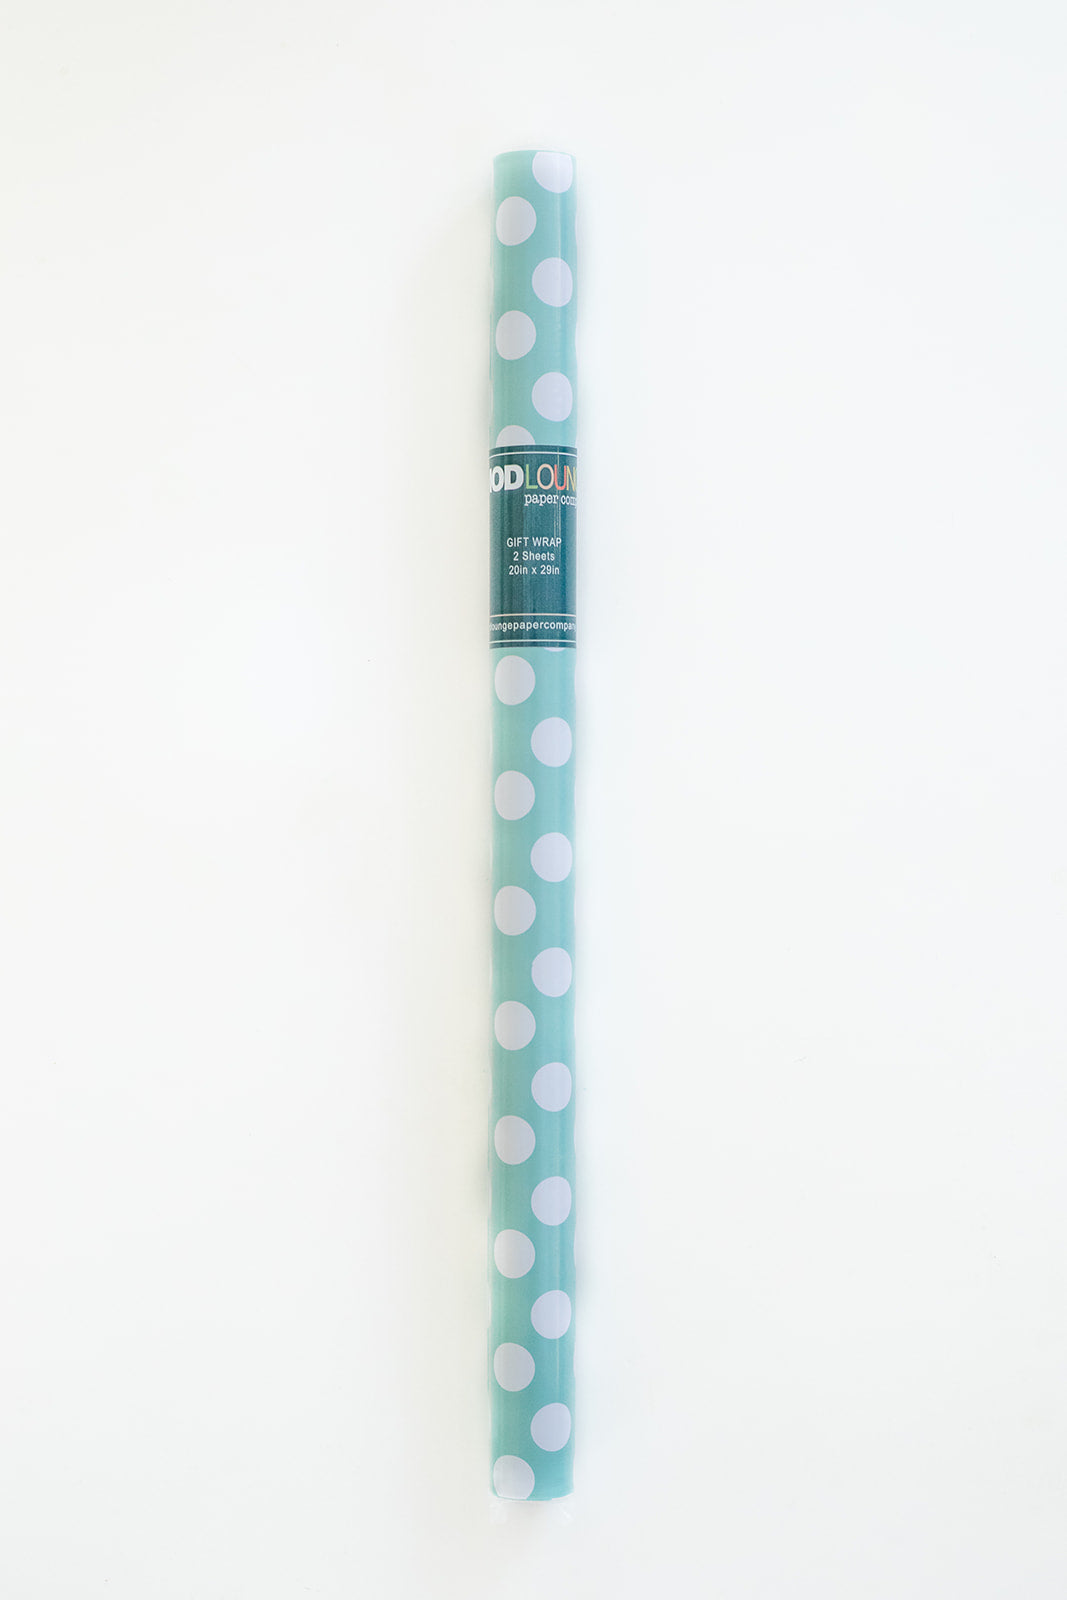 aqua blue polka dot gift wrap - 2 sheets per tube